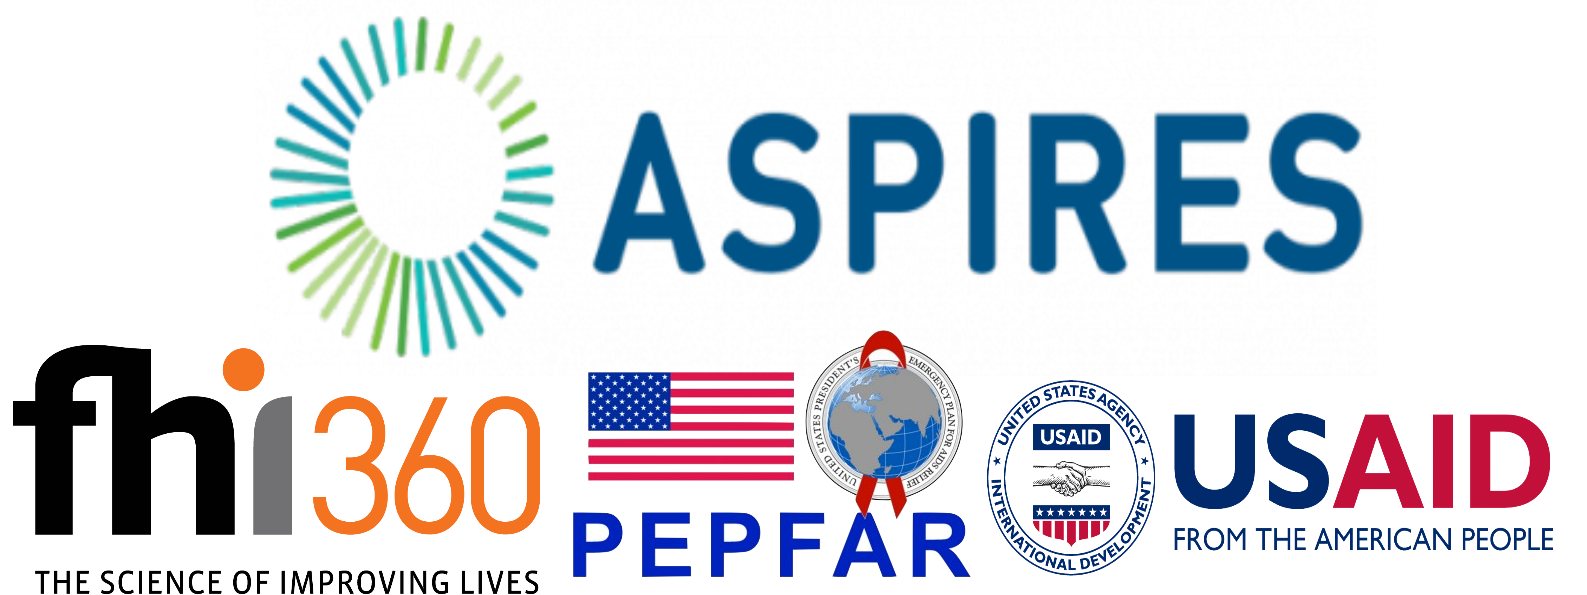 FHI Aspires Pepfar USAID.png